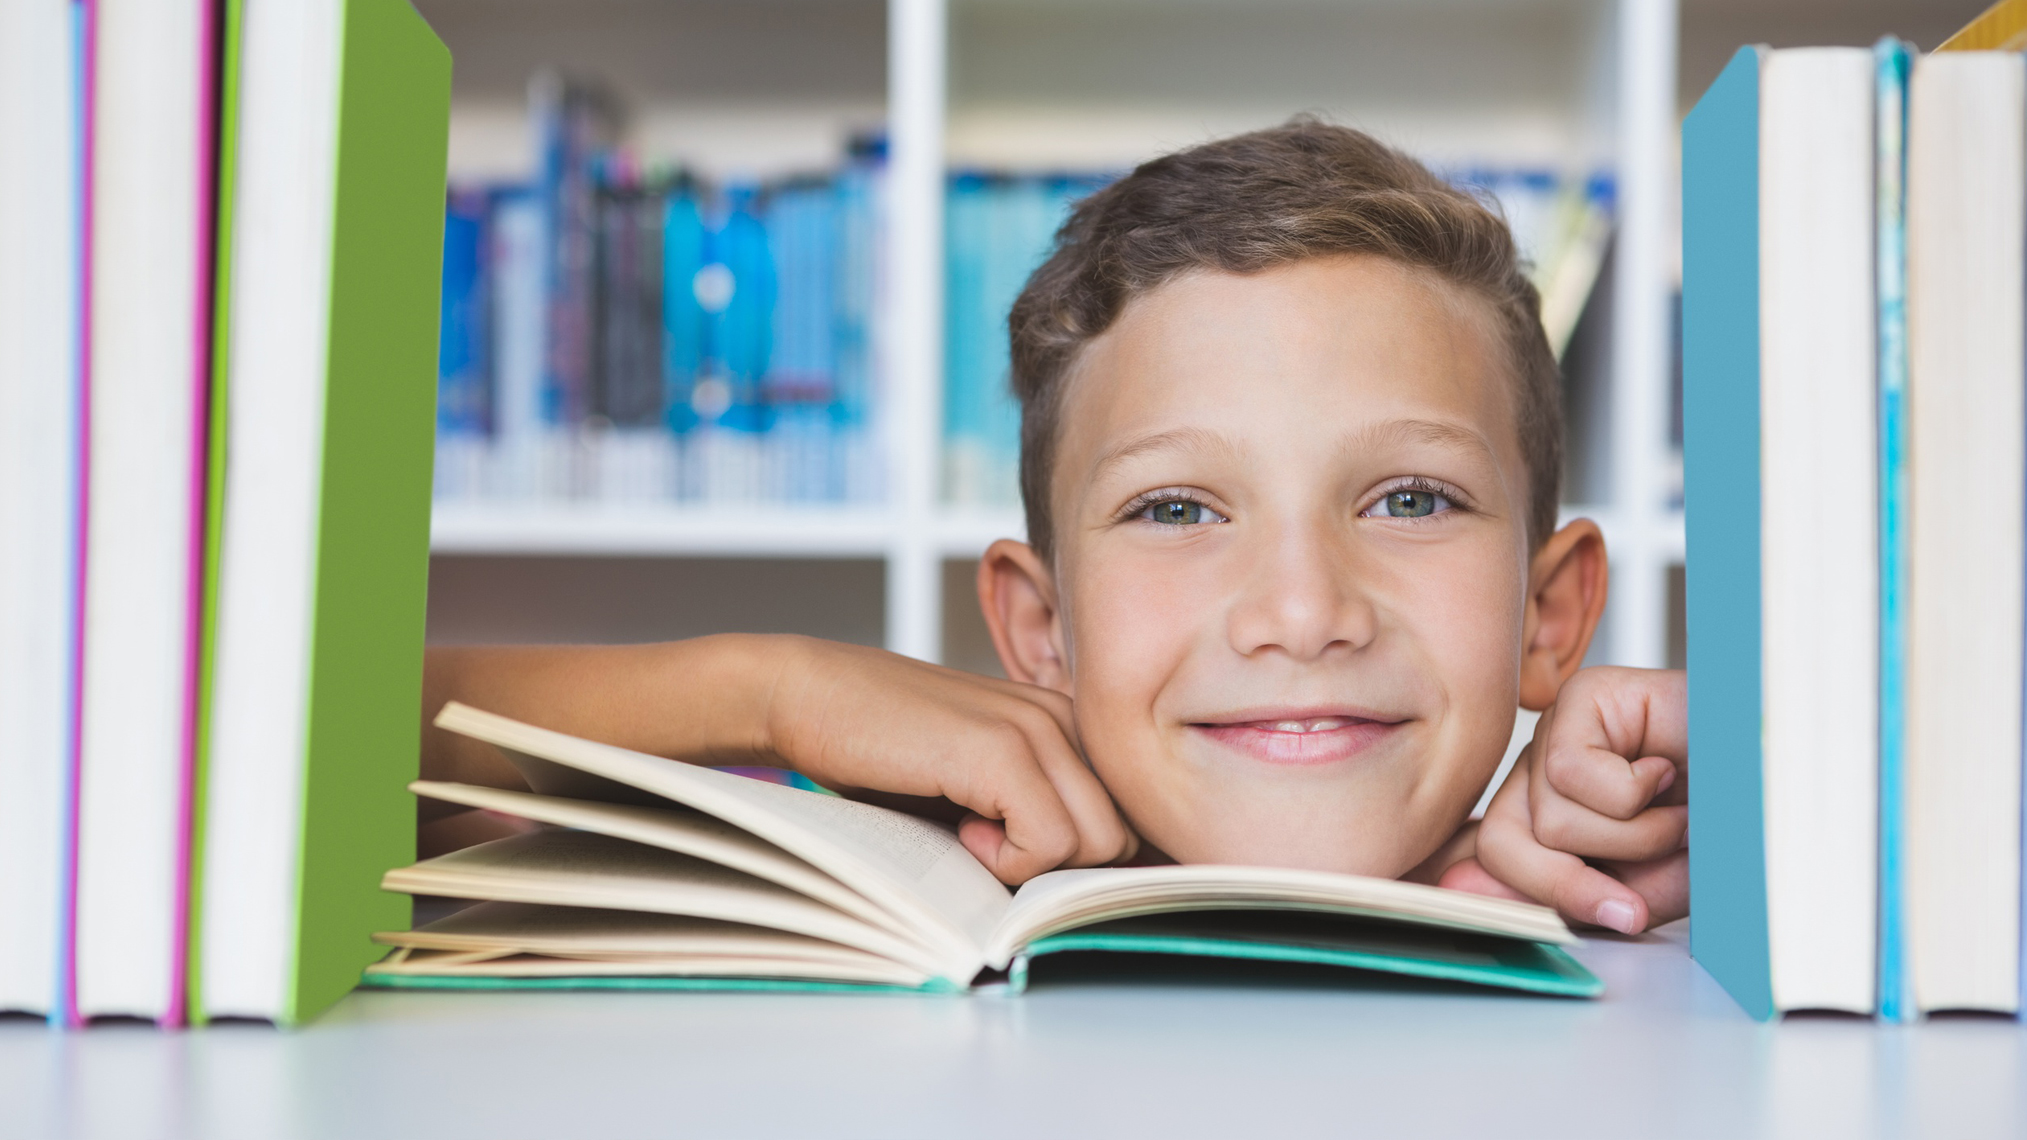 Junge schaut durch ein Bücherregal hindurch